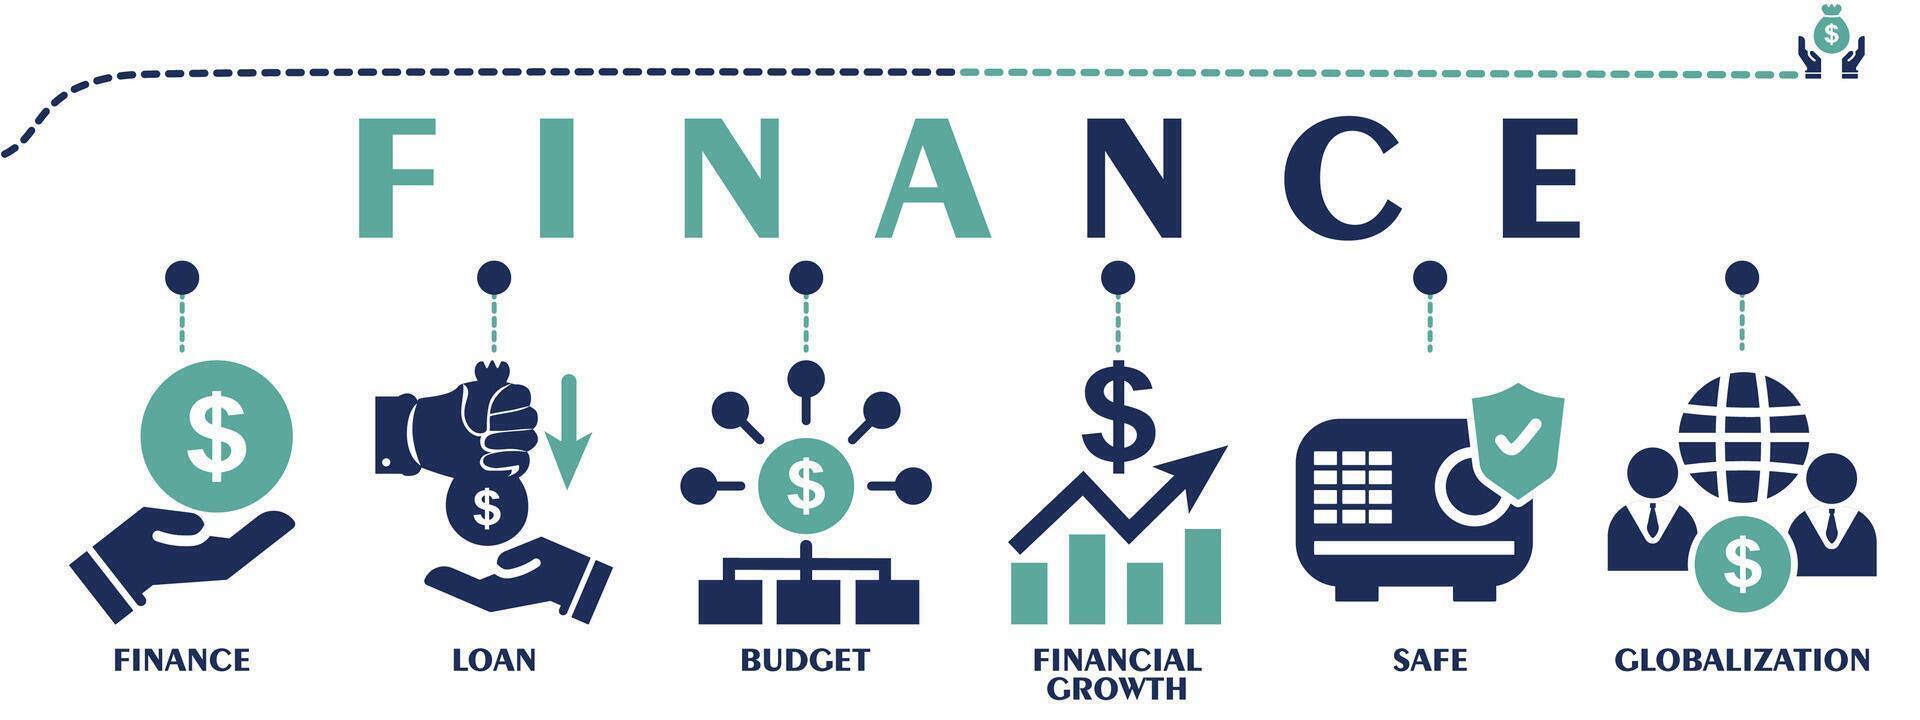 la finance bannière la toile solide Icônes. vecteur illustration concept comprenant icône comme finance, prêt, budget, financier croissance, sûr et mondialisation